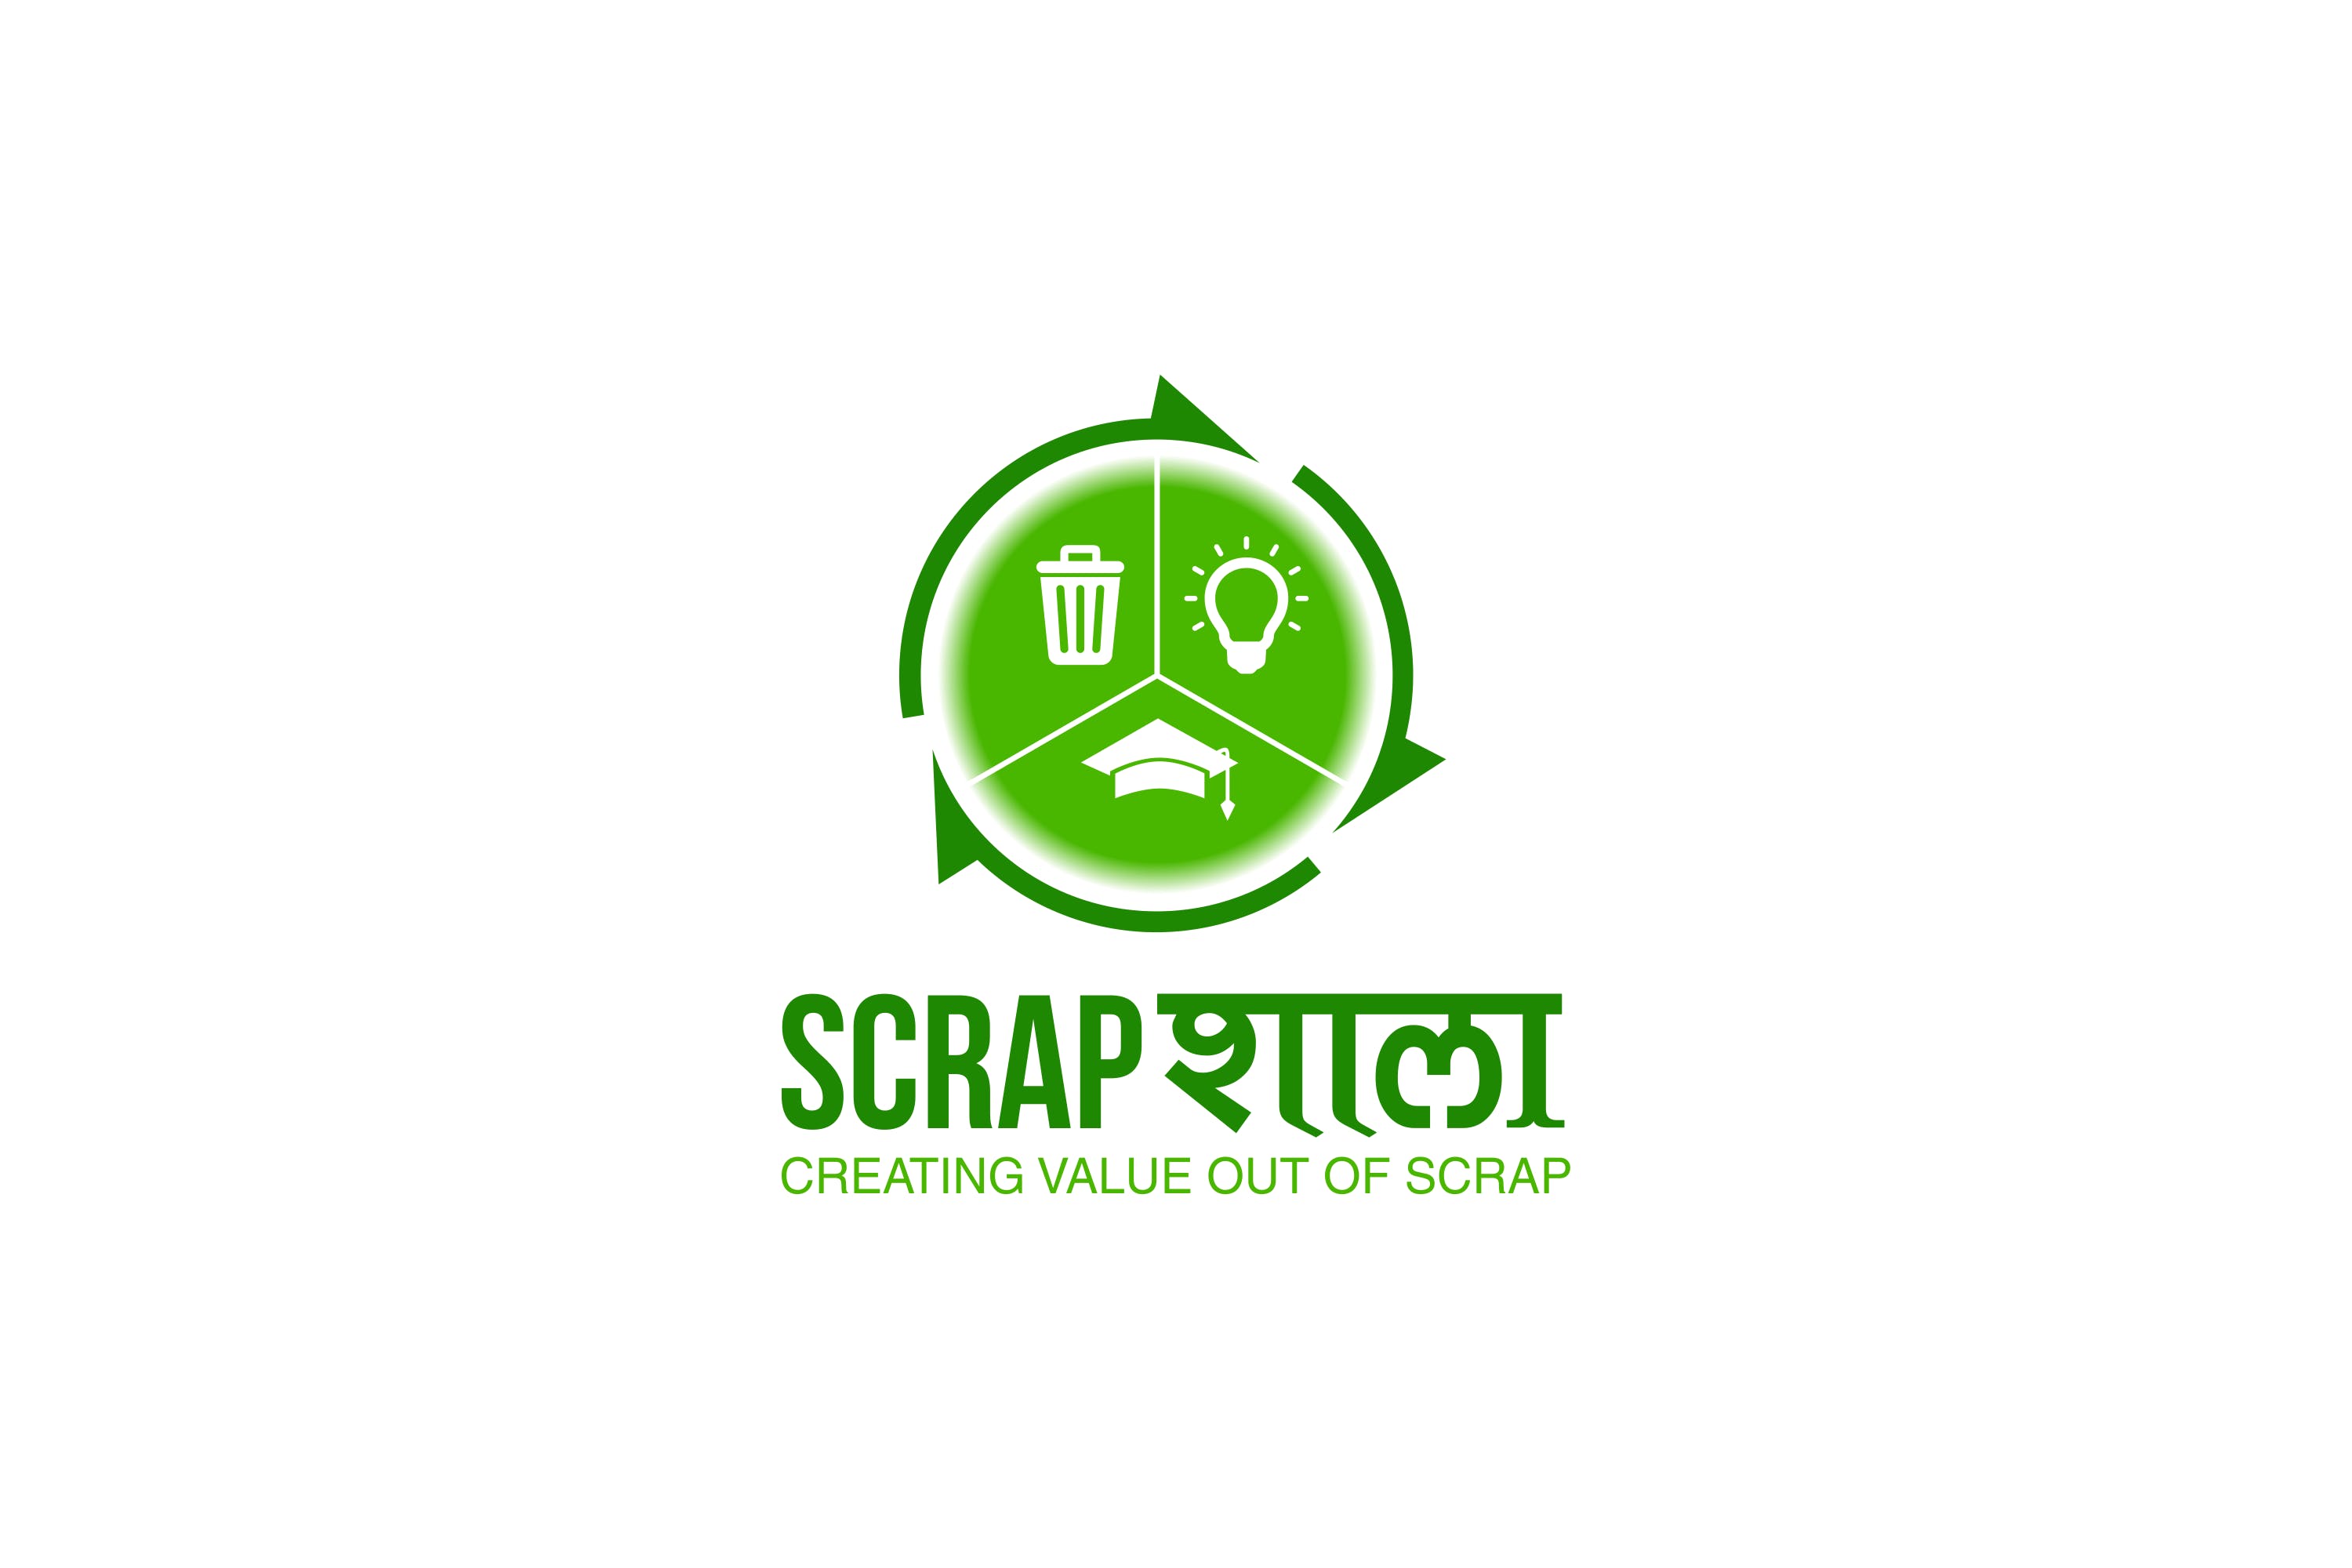 merchant-logo